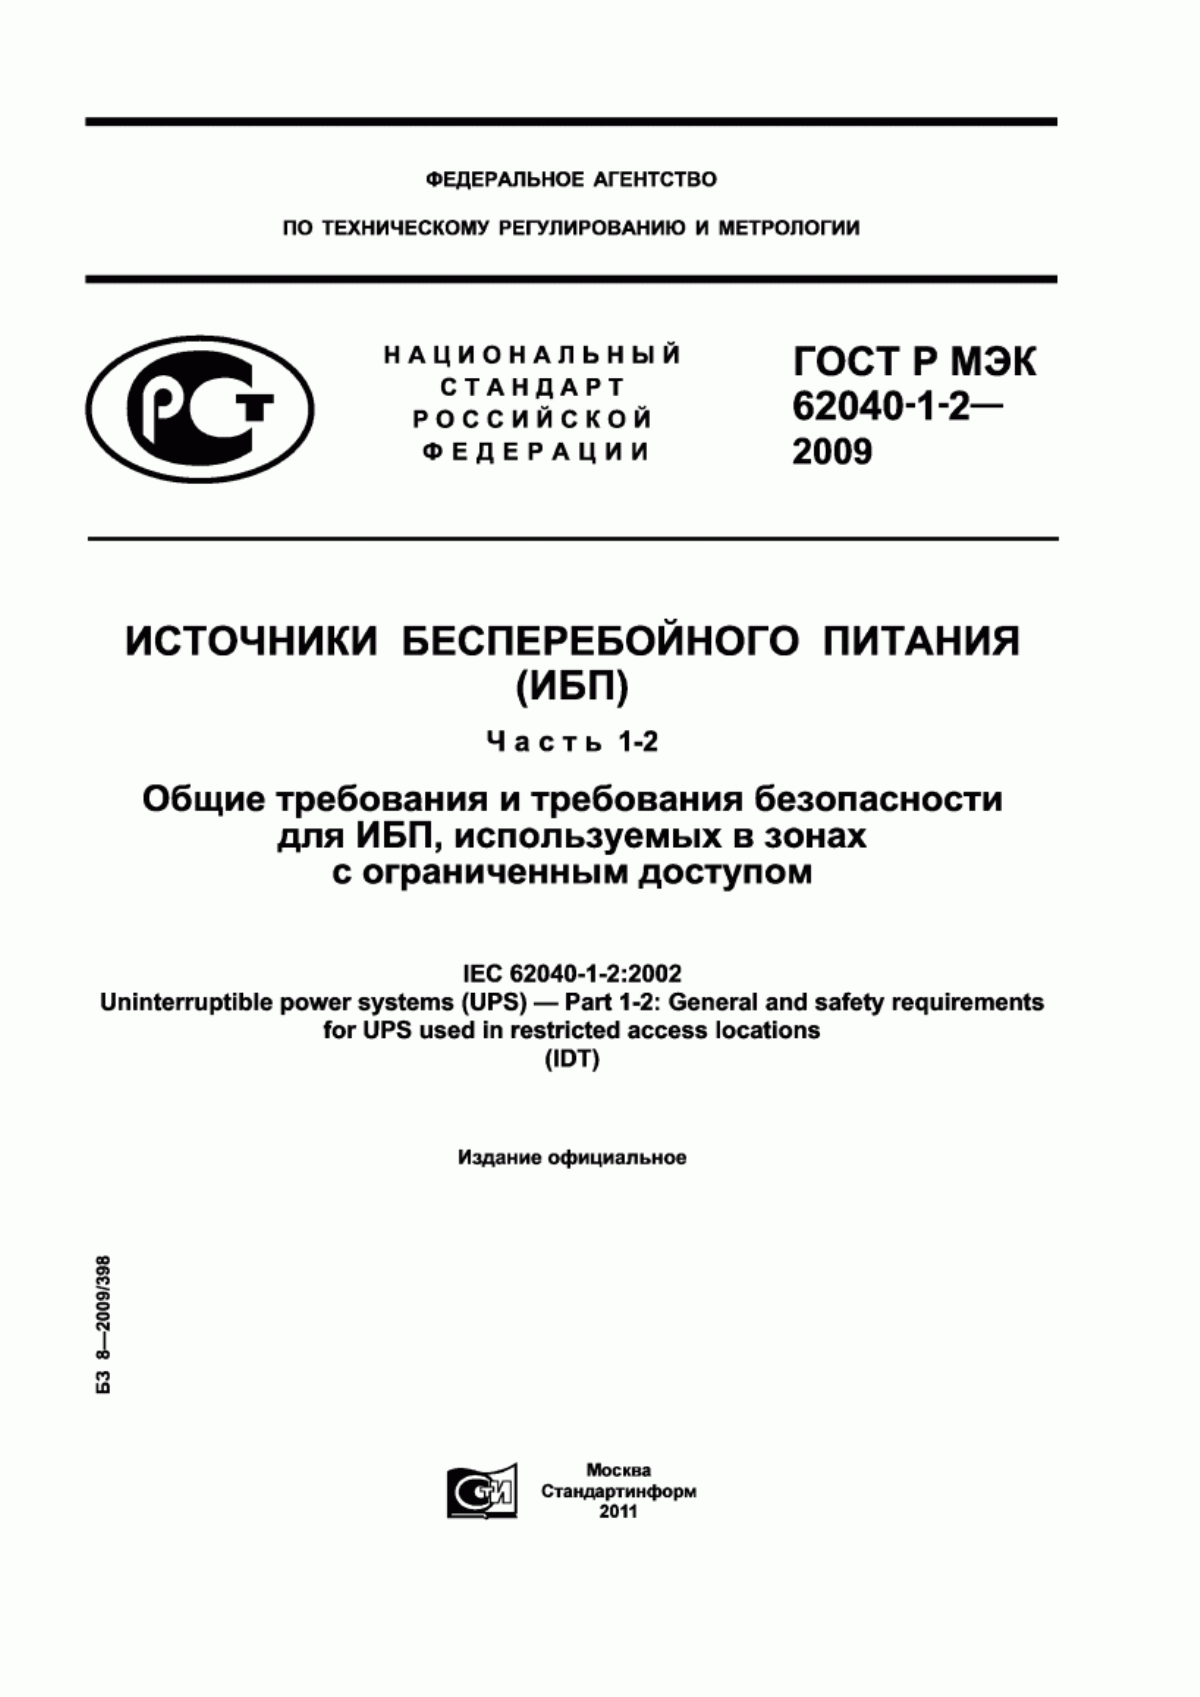 ГОСТ Р МЭК 62040-1-2-2009 Источники бесперебойного питания (ИБП). Часть 1-2. Общие требования и требования безопасности для ИБП, используемых в зонах с ограниченным доступом